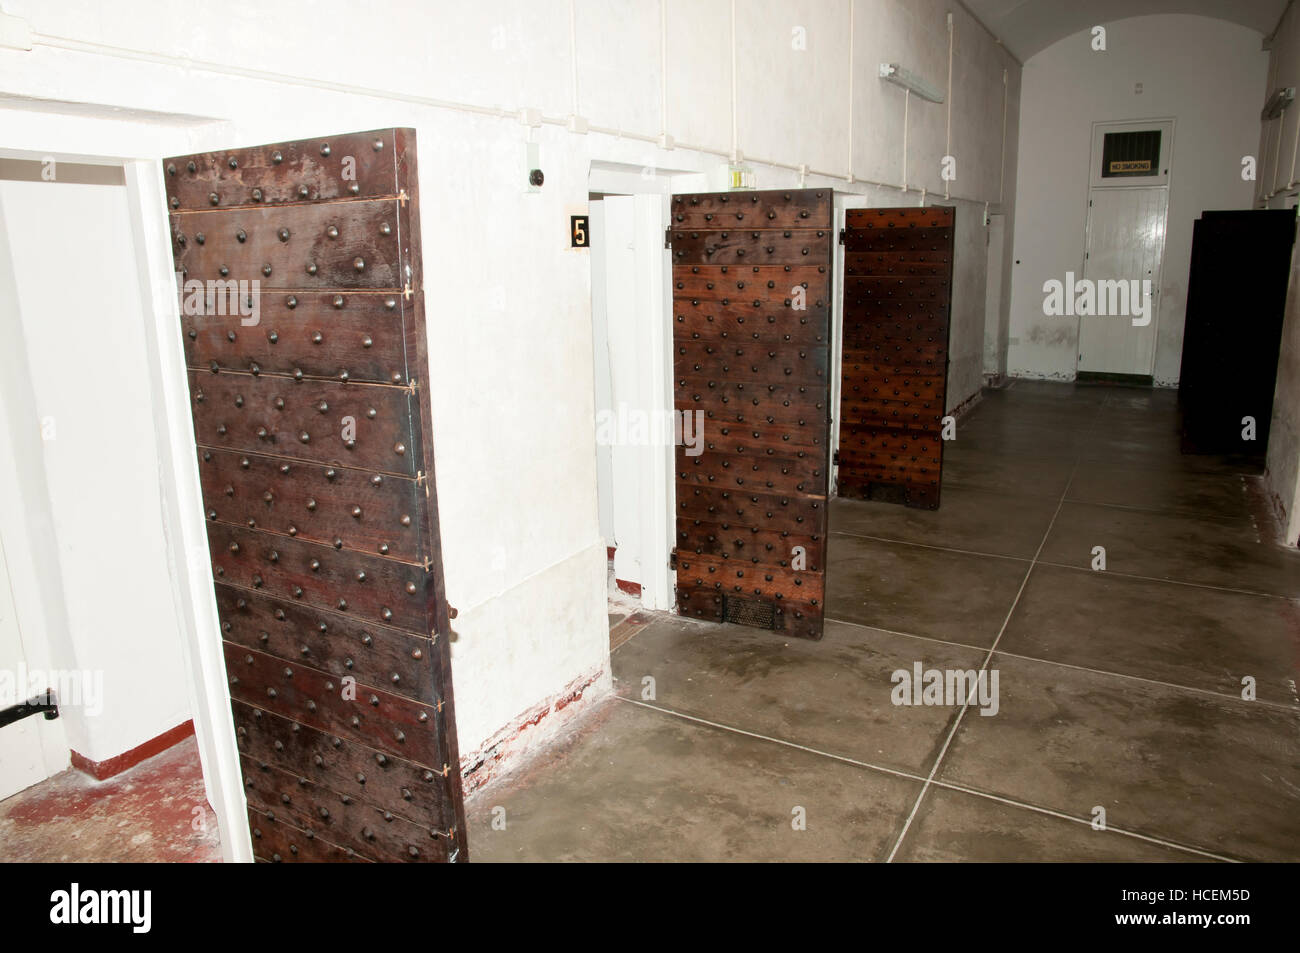 Cellules confinées de Fremantle Prison - Australie Banque D'Images